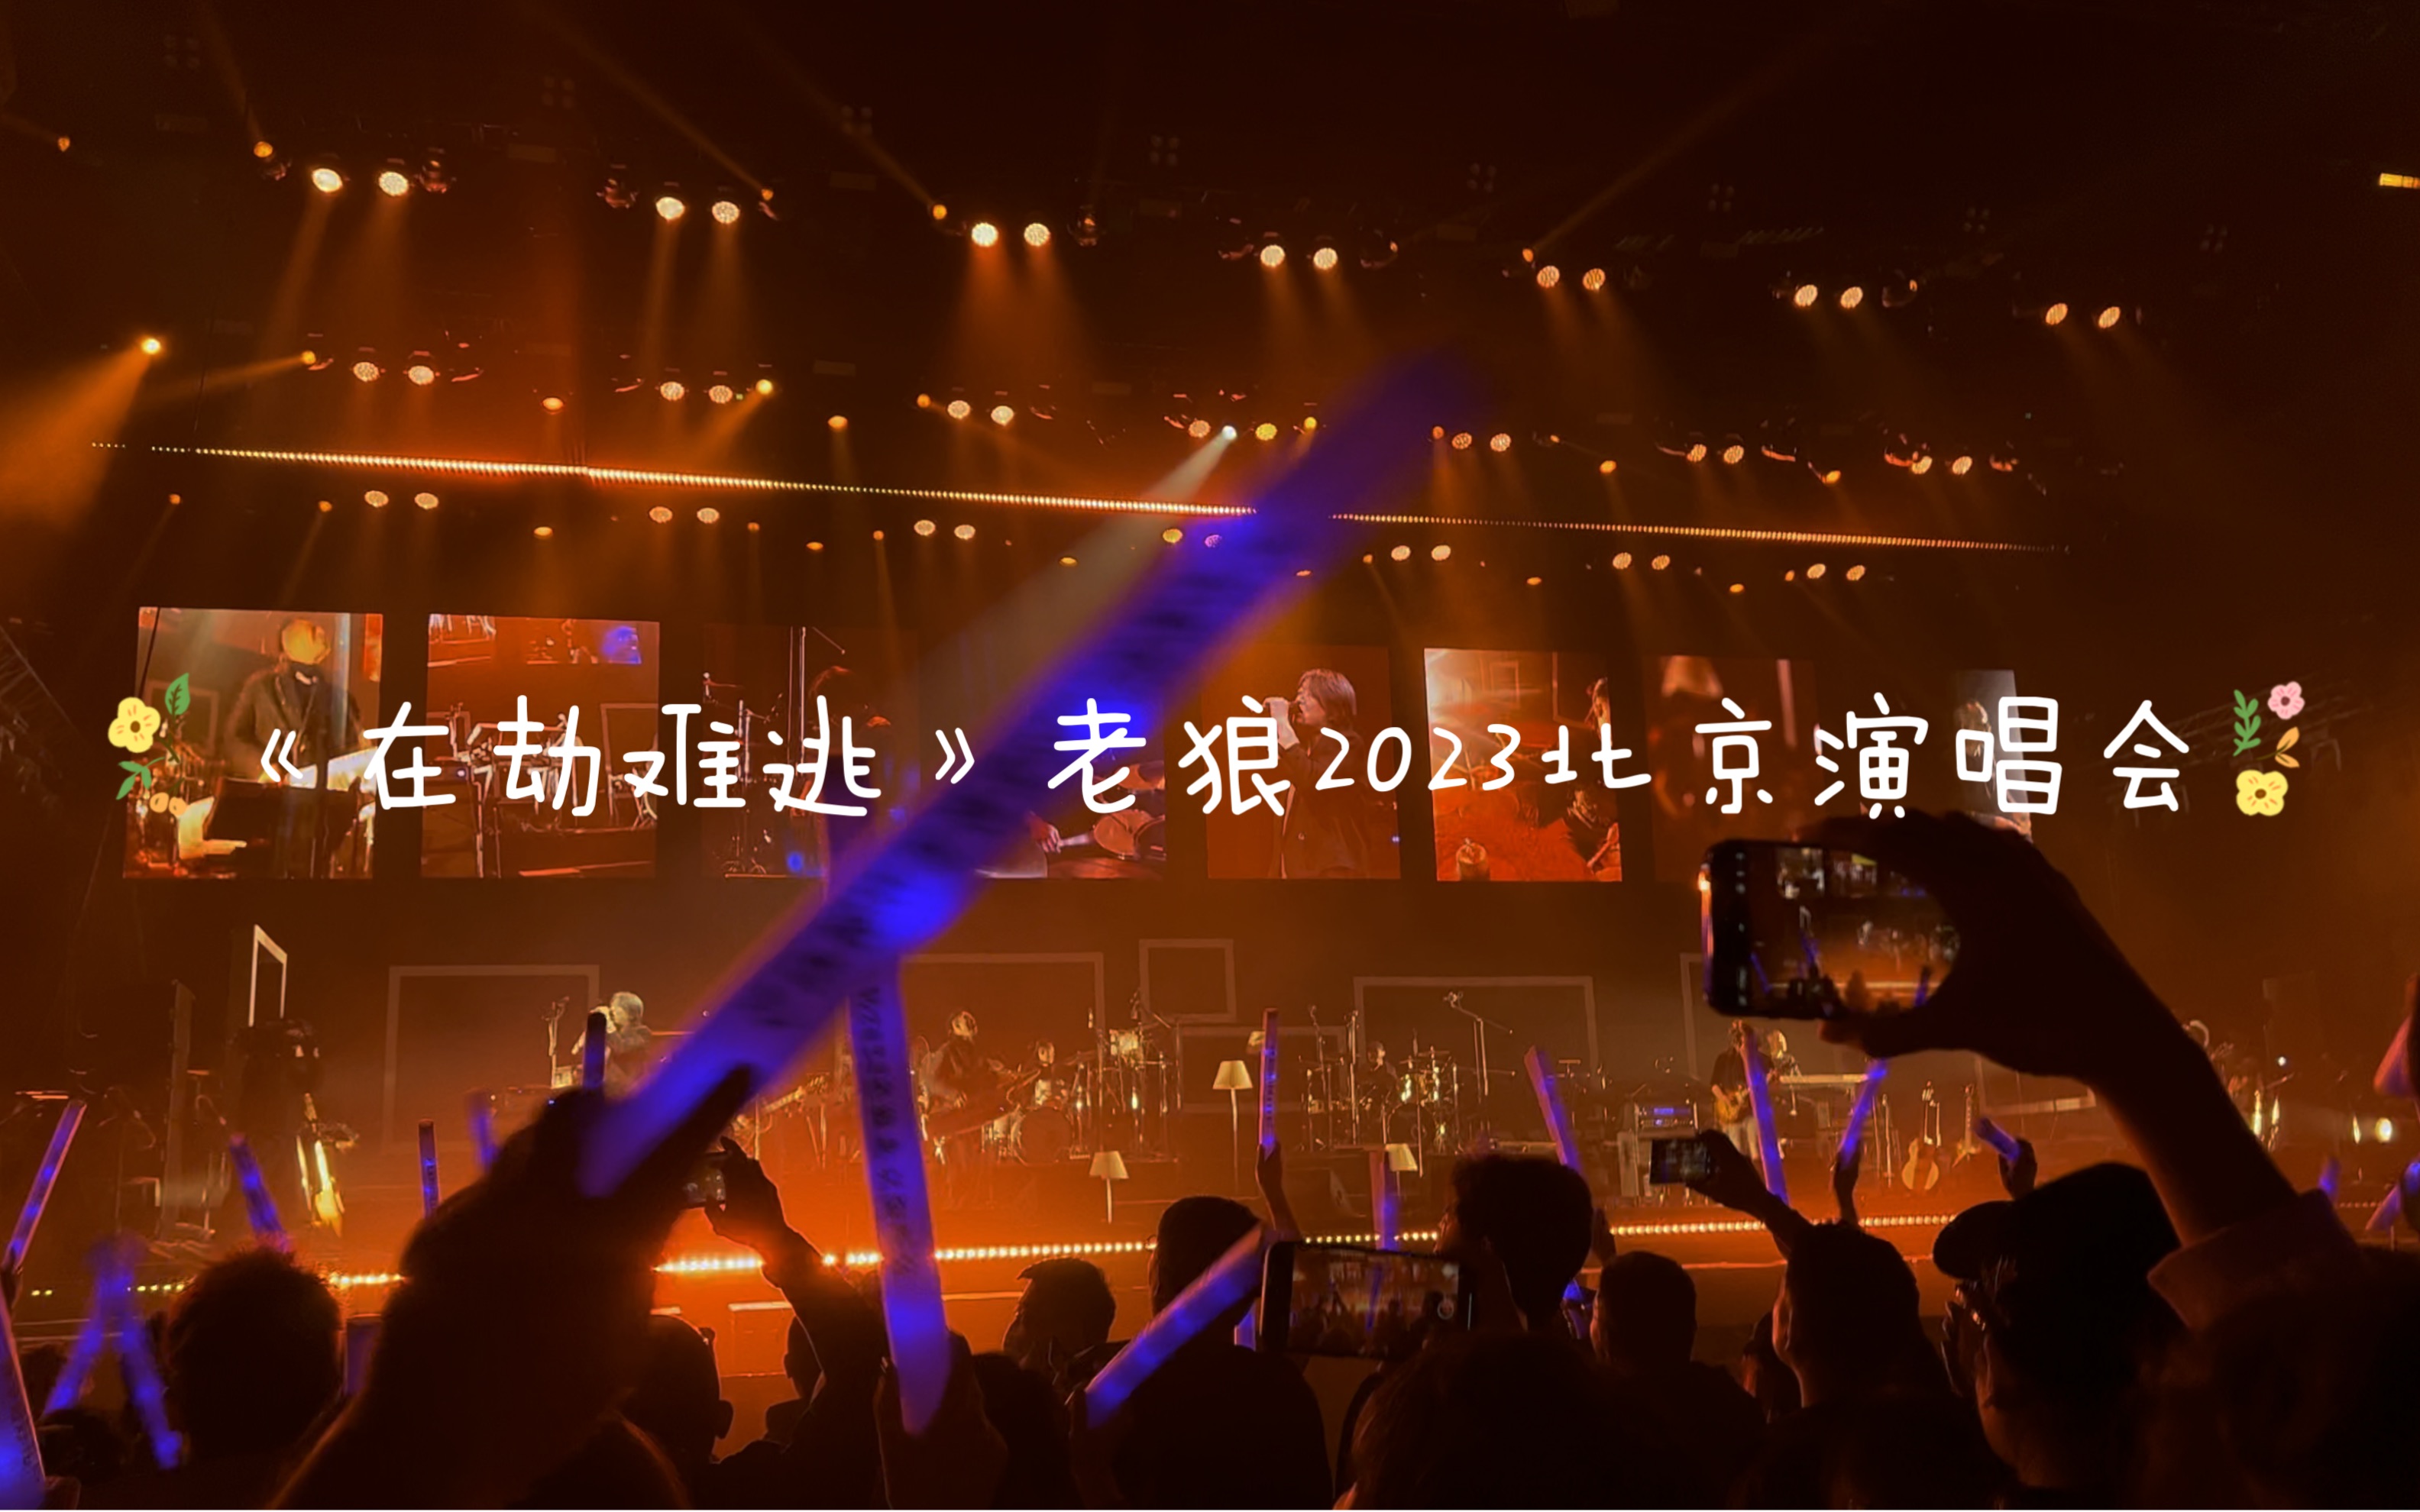 时光流转—2023老狼北京演唱会 《在劫难逃》完整版【嗨翻全场】